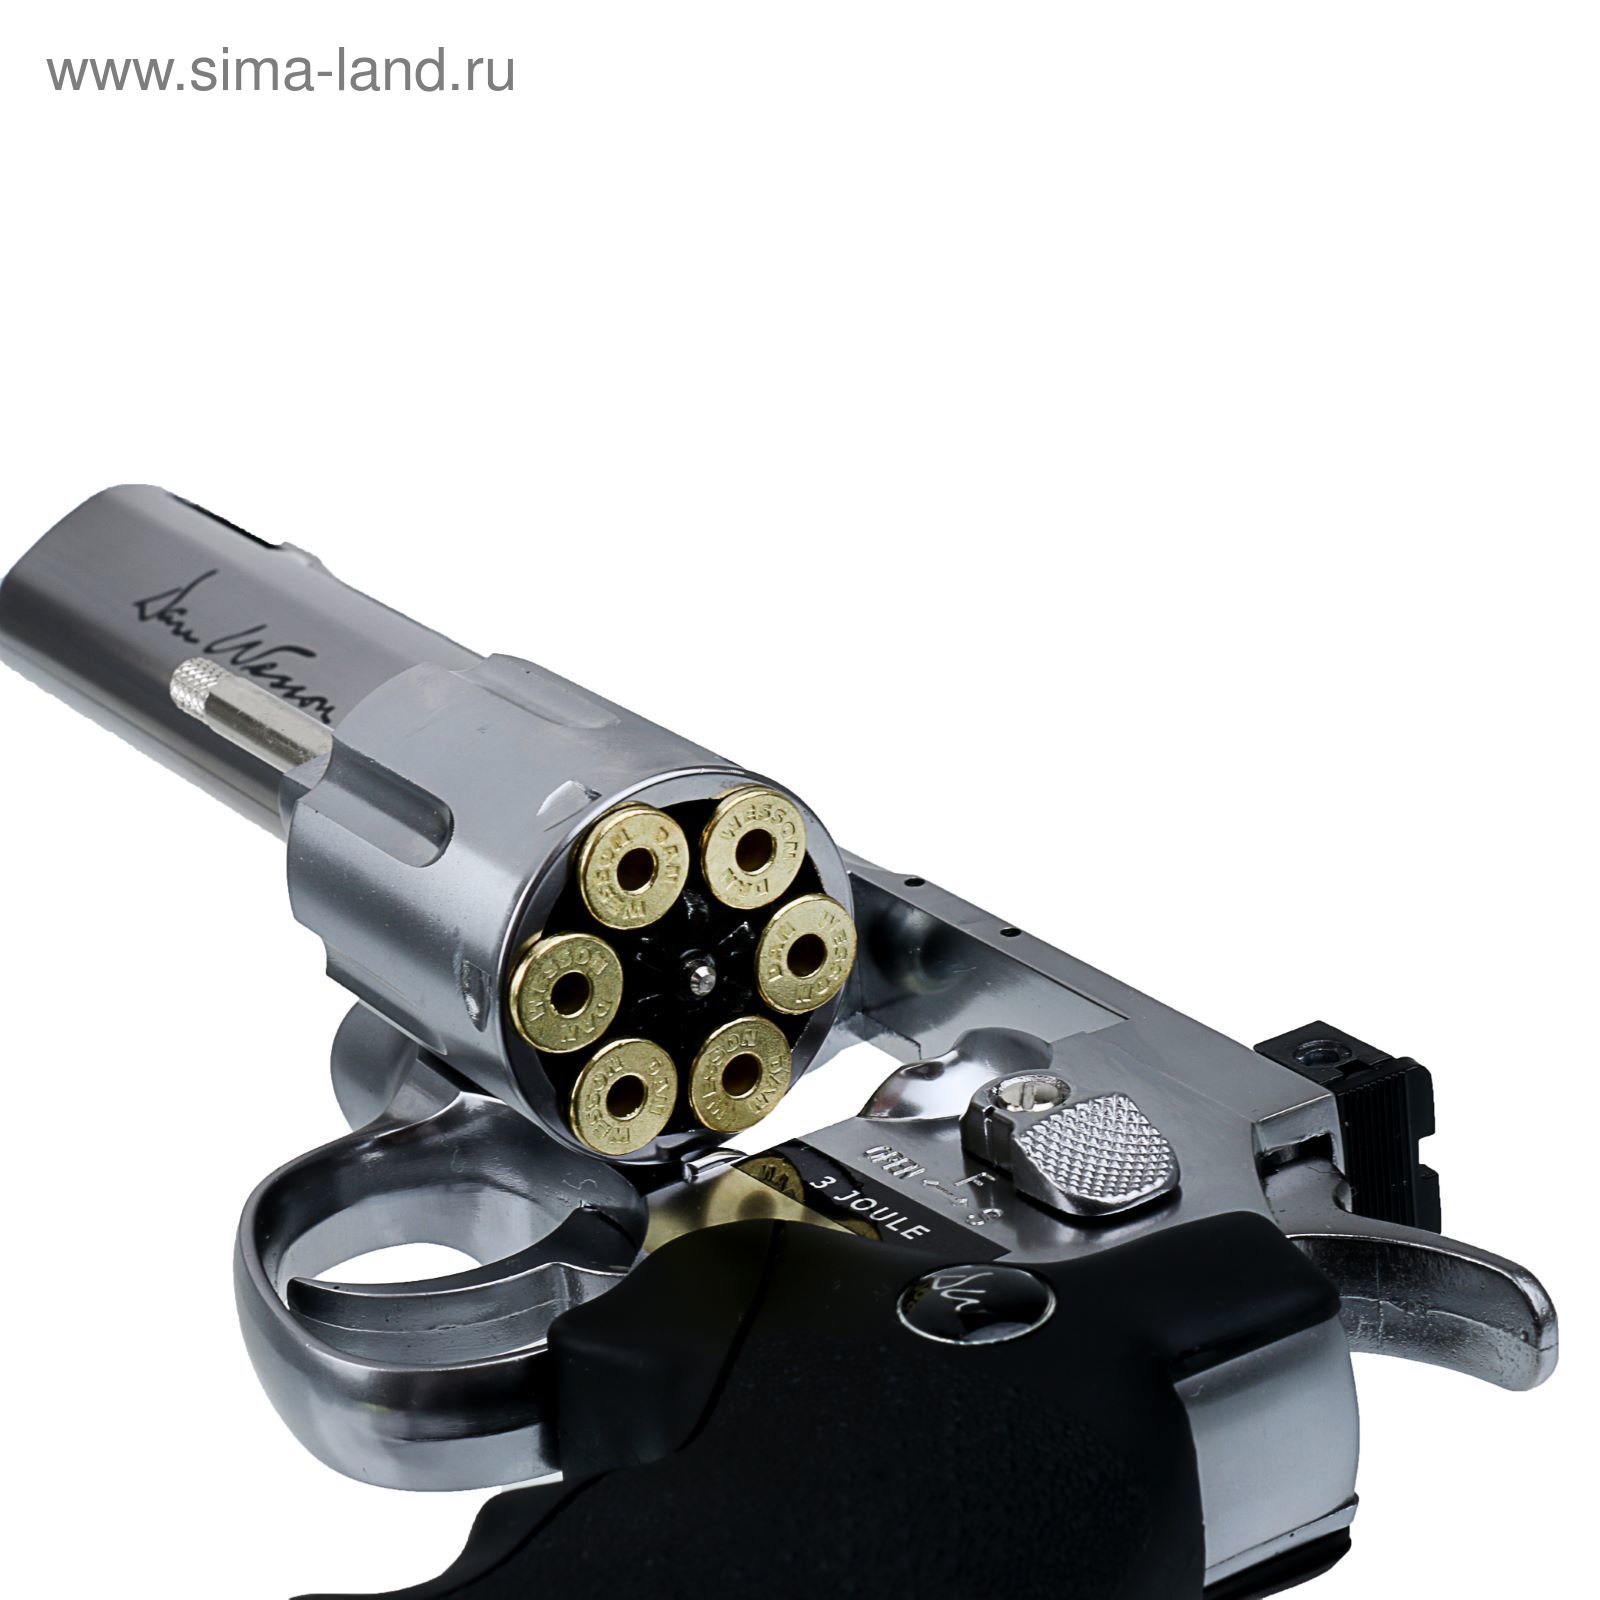 Револьвер пневматический Dan Wesson 6" (16559) серебристый, калибр  4,5 мм